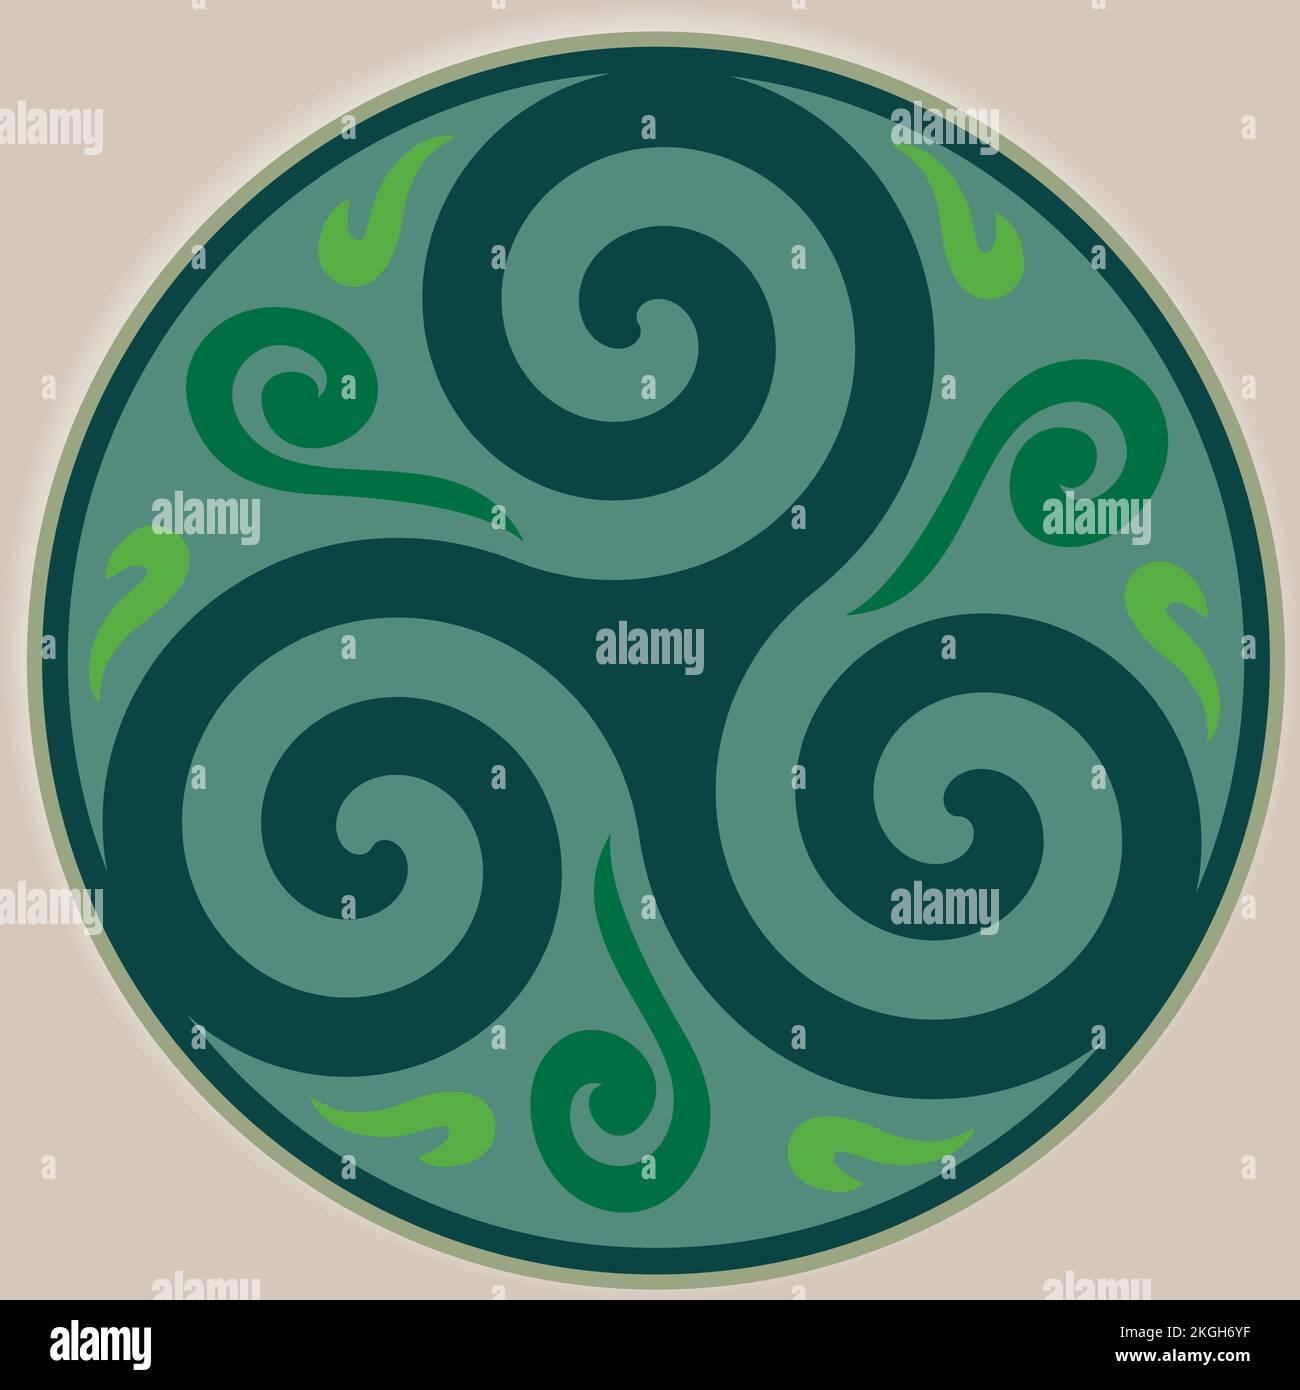 Nodo Celtico e cerchio del Triskelion - simbolo Celtico - Trinità - geometria Sacra - colori Energy Green Illustrazione Vettoriale